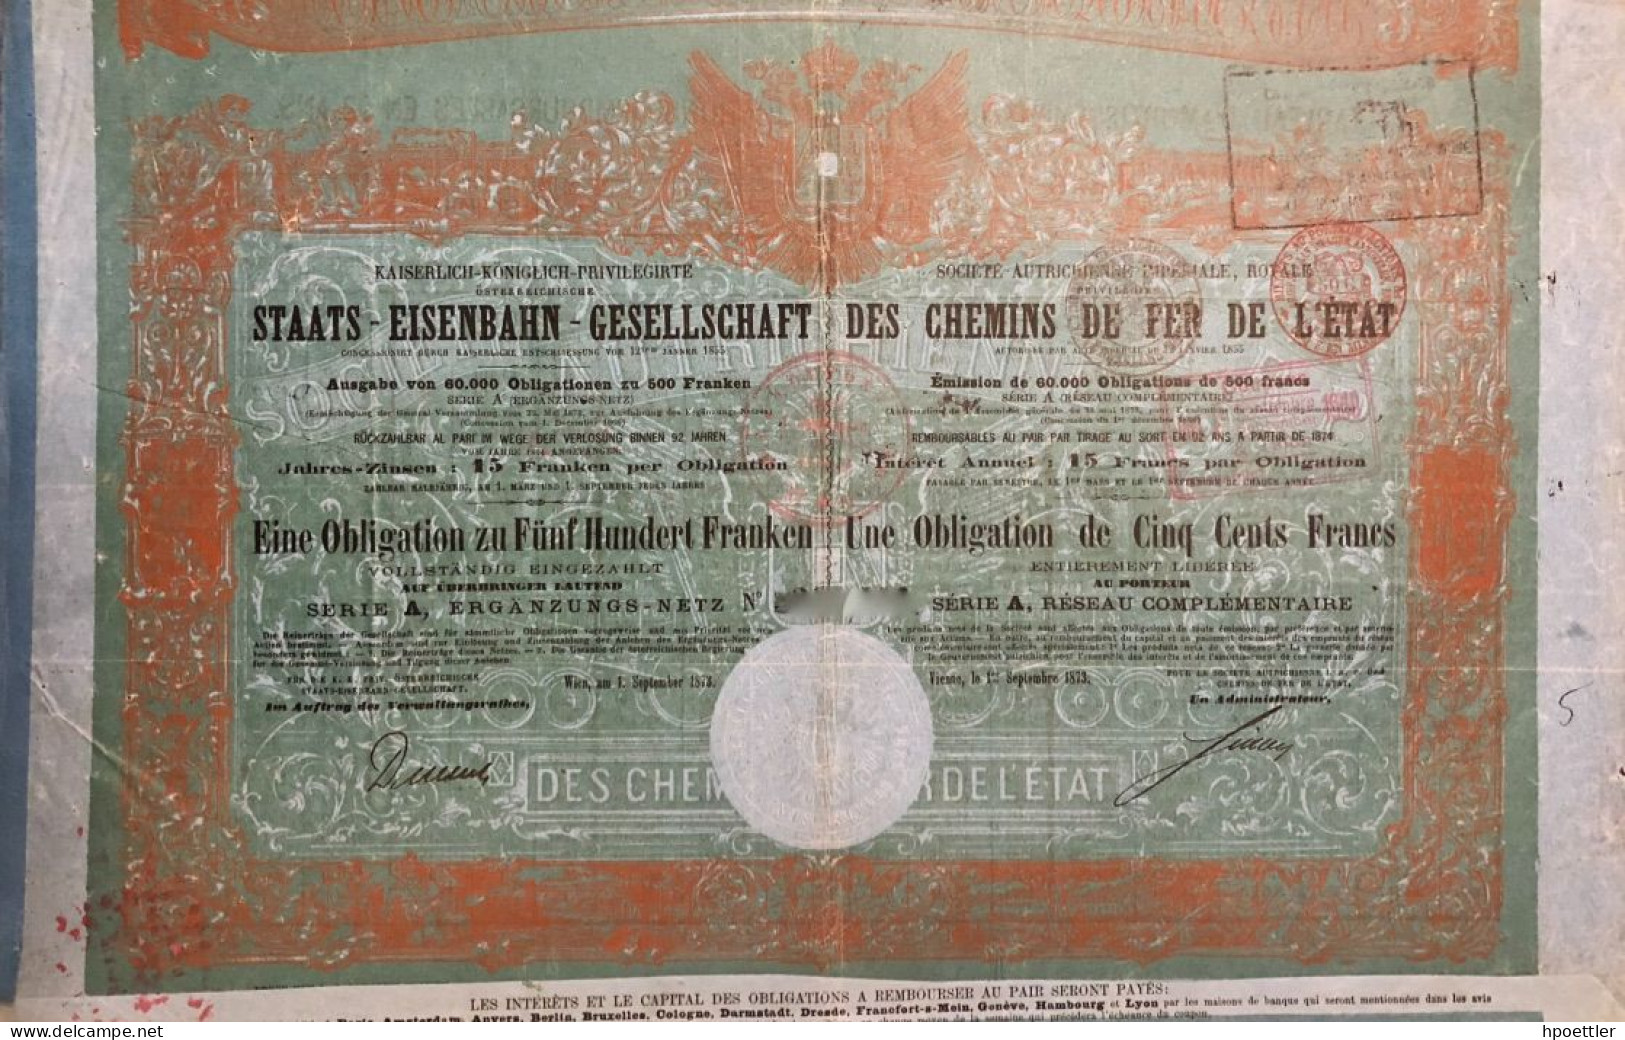 Vienne 1873: Societe Autrichienne Imperiale Royale, Privilegie Des Chemins De Fer De L'Etat - 500 Francs - Ferrocarril & Tranvías